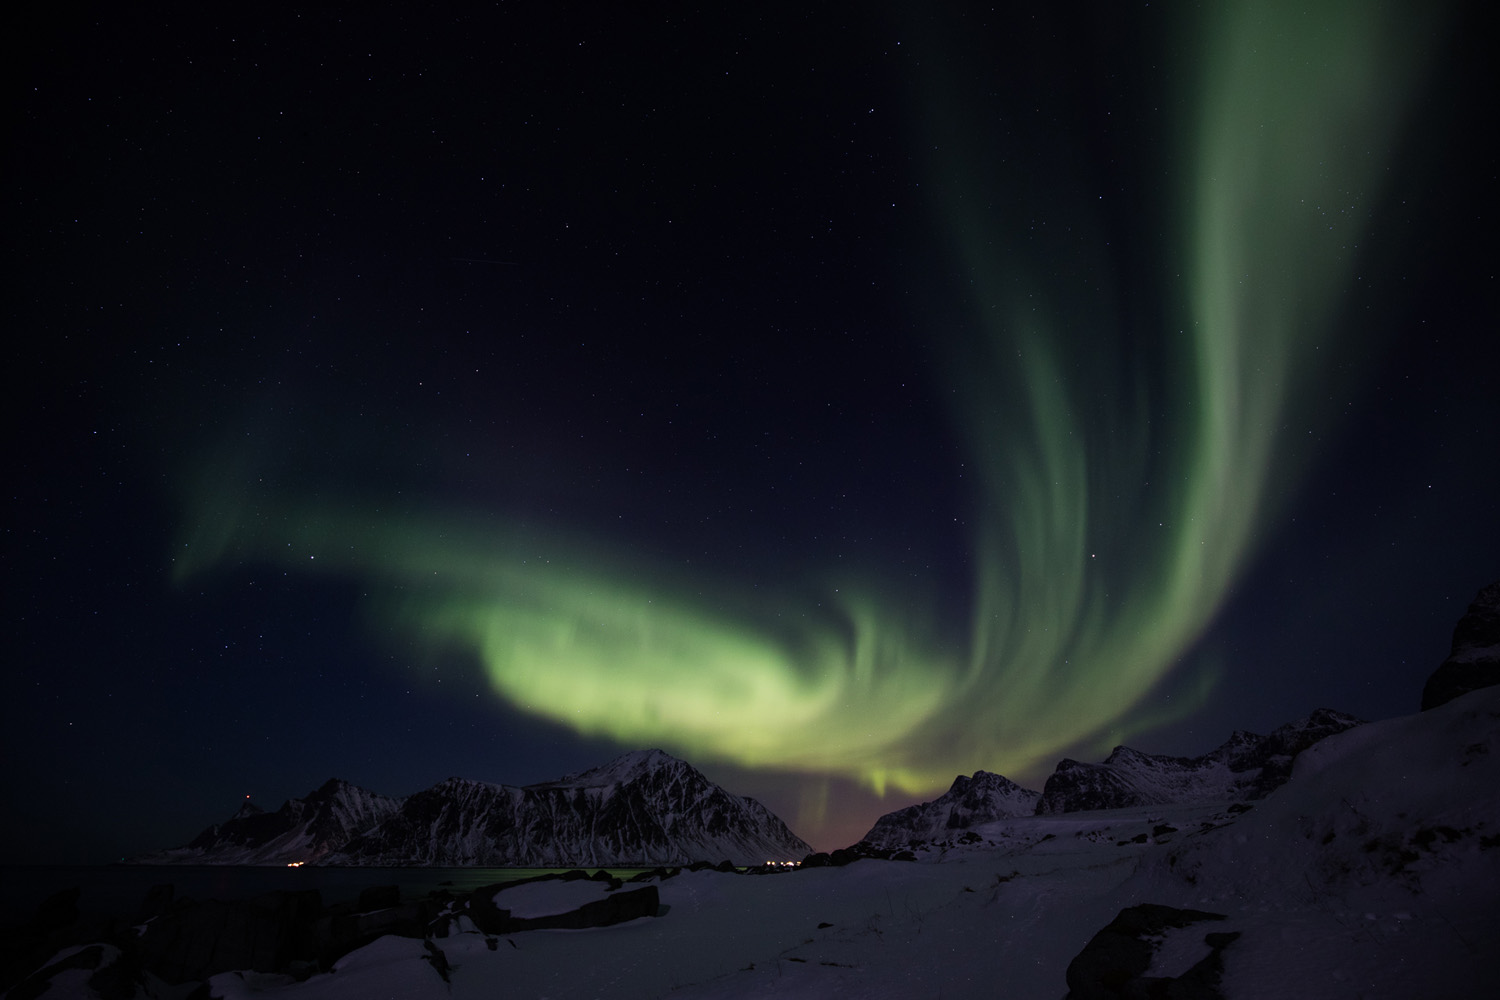 Aurores boréales photographiées durant un voyages photo aurore boréale dans les Lofoten, en Norvège